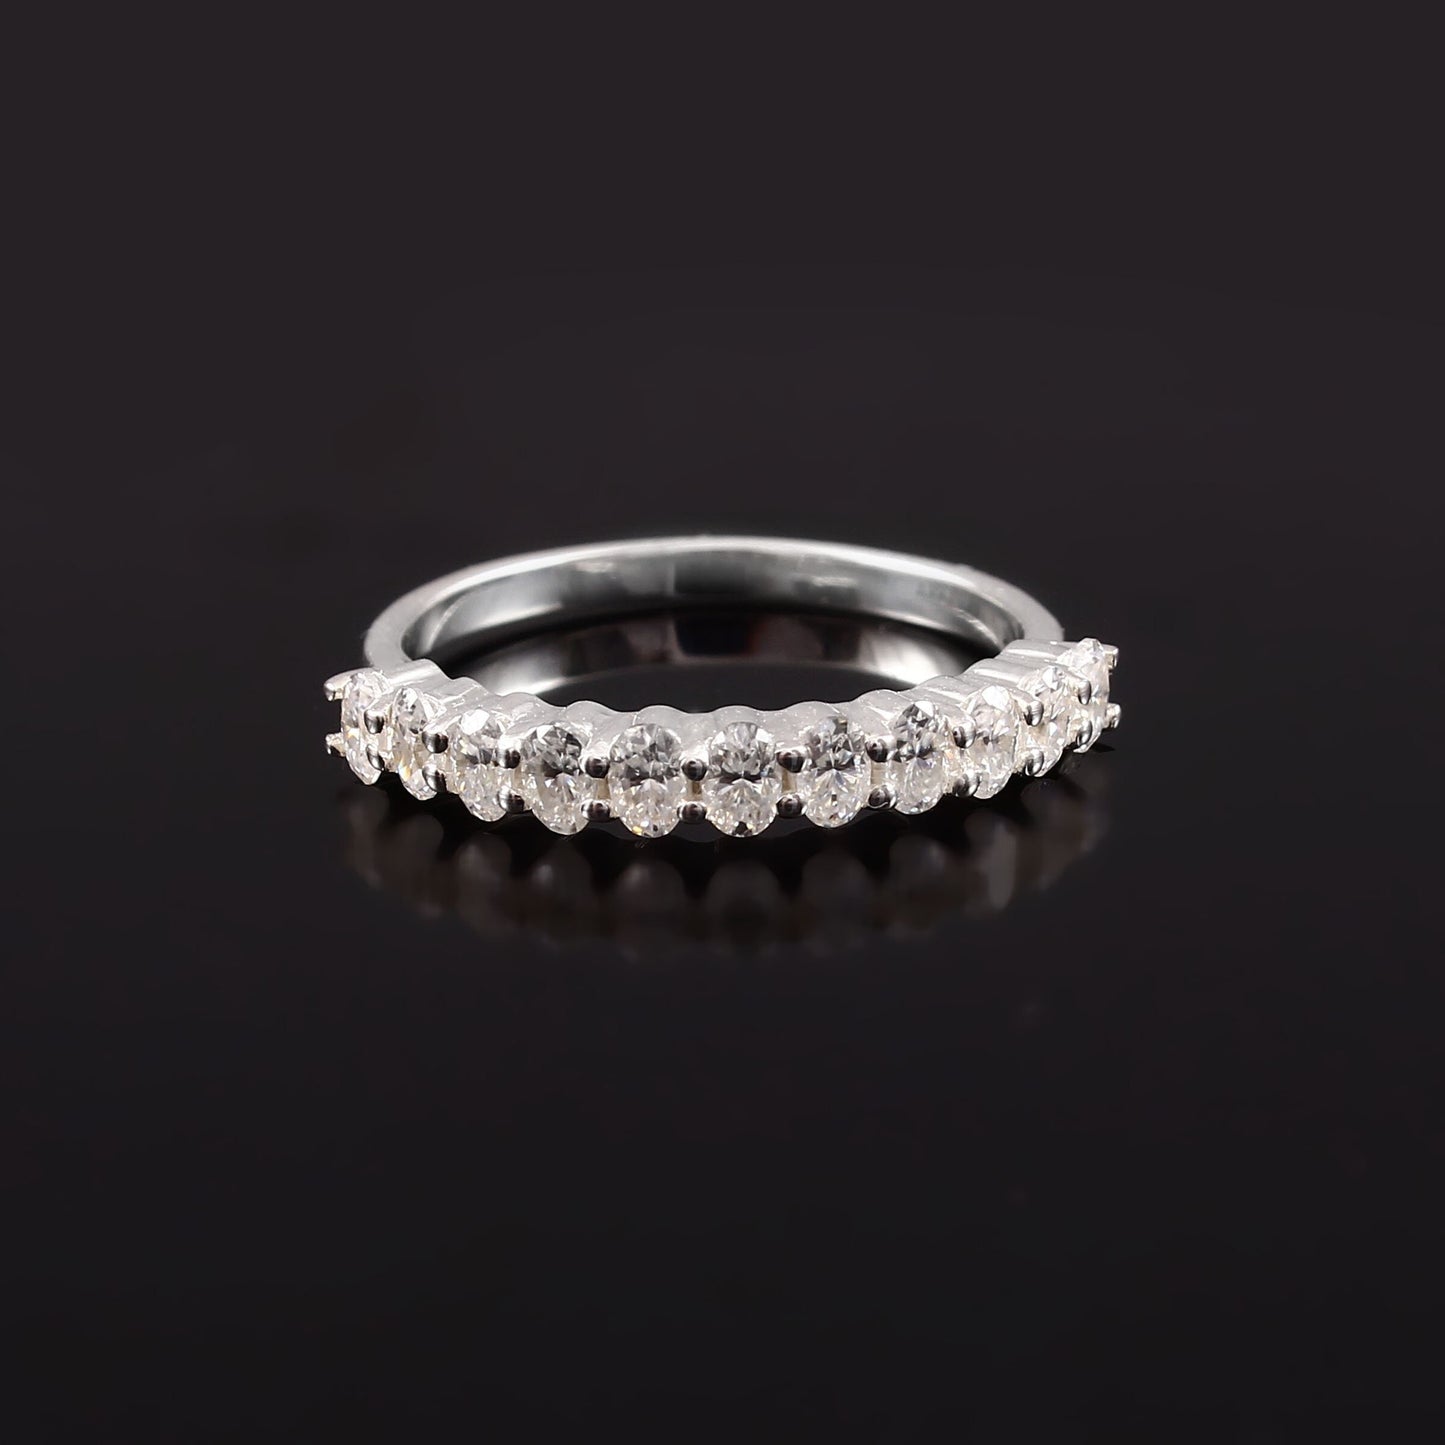 3X2 MM Half Eternity Diamond Band Ring, Lab Grown Diamond Ring, Handmade Designer Ring, Solid 10k/14k/18k Gold Ring For Valentine Gift